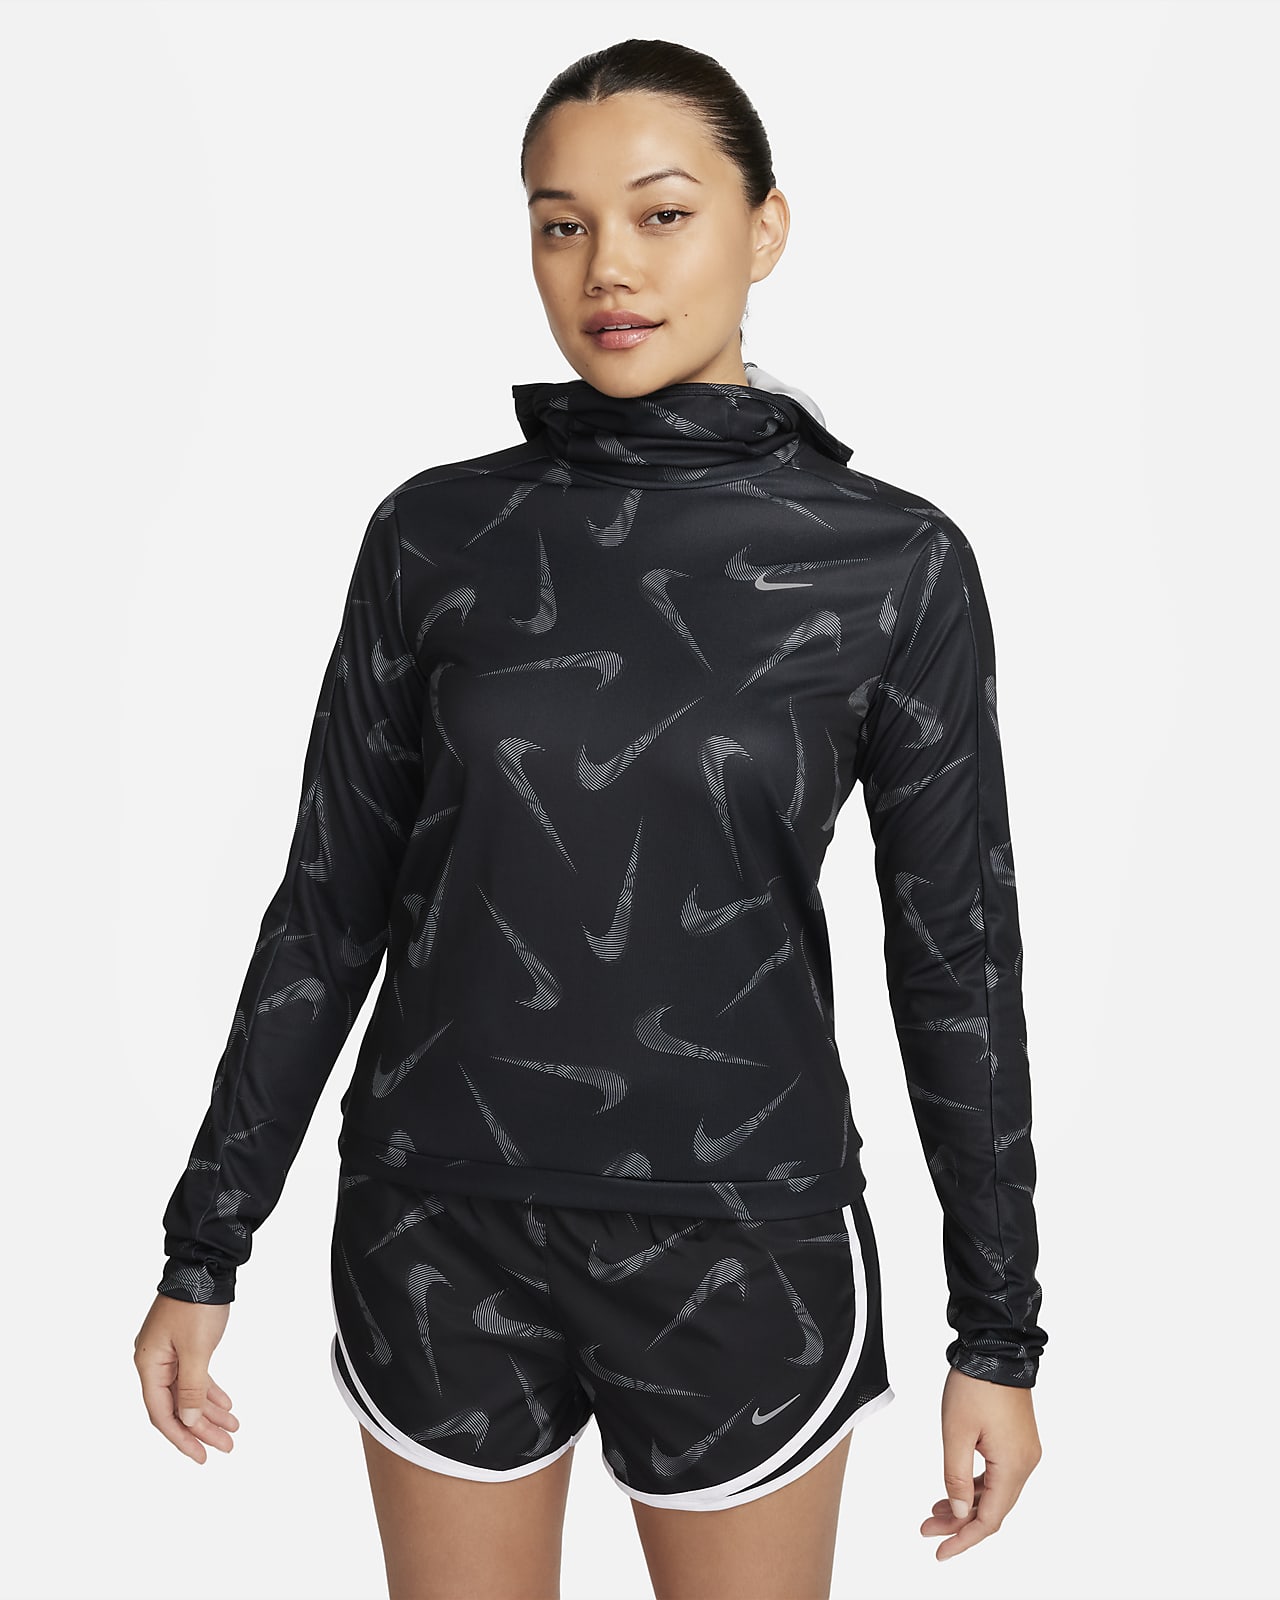 Giacca da running stampata con cappuccio Nike Swoosh – Donna